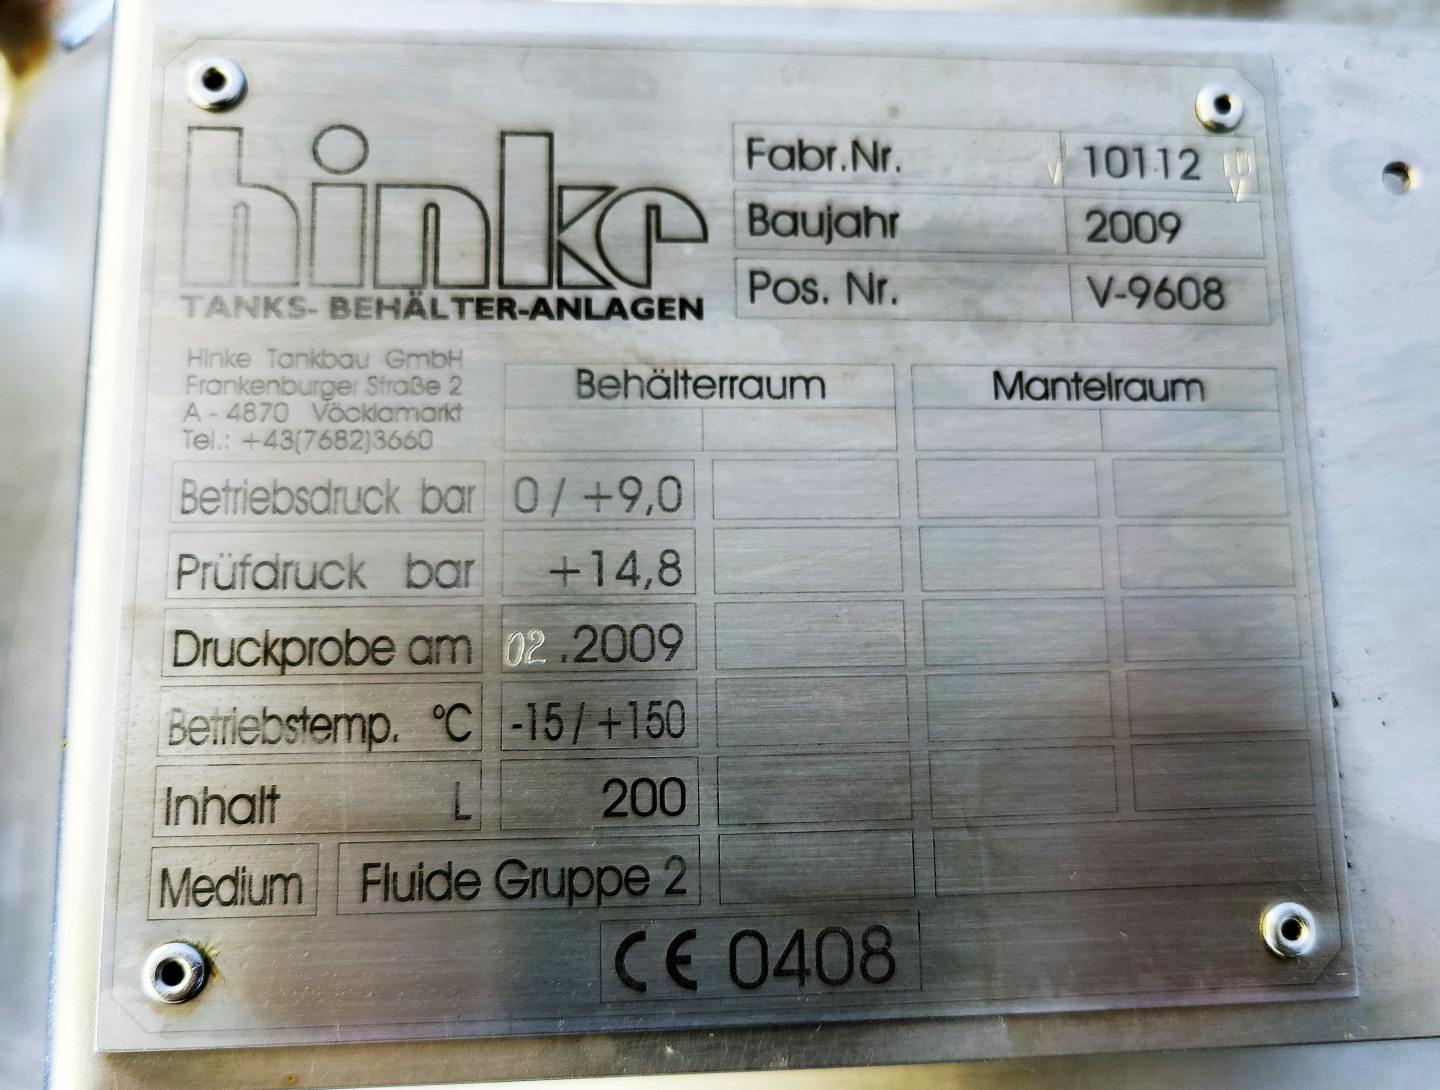 Hinke 200 Ltr. - Drukketel - image 8